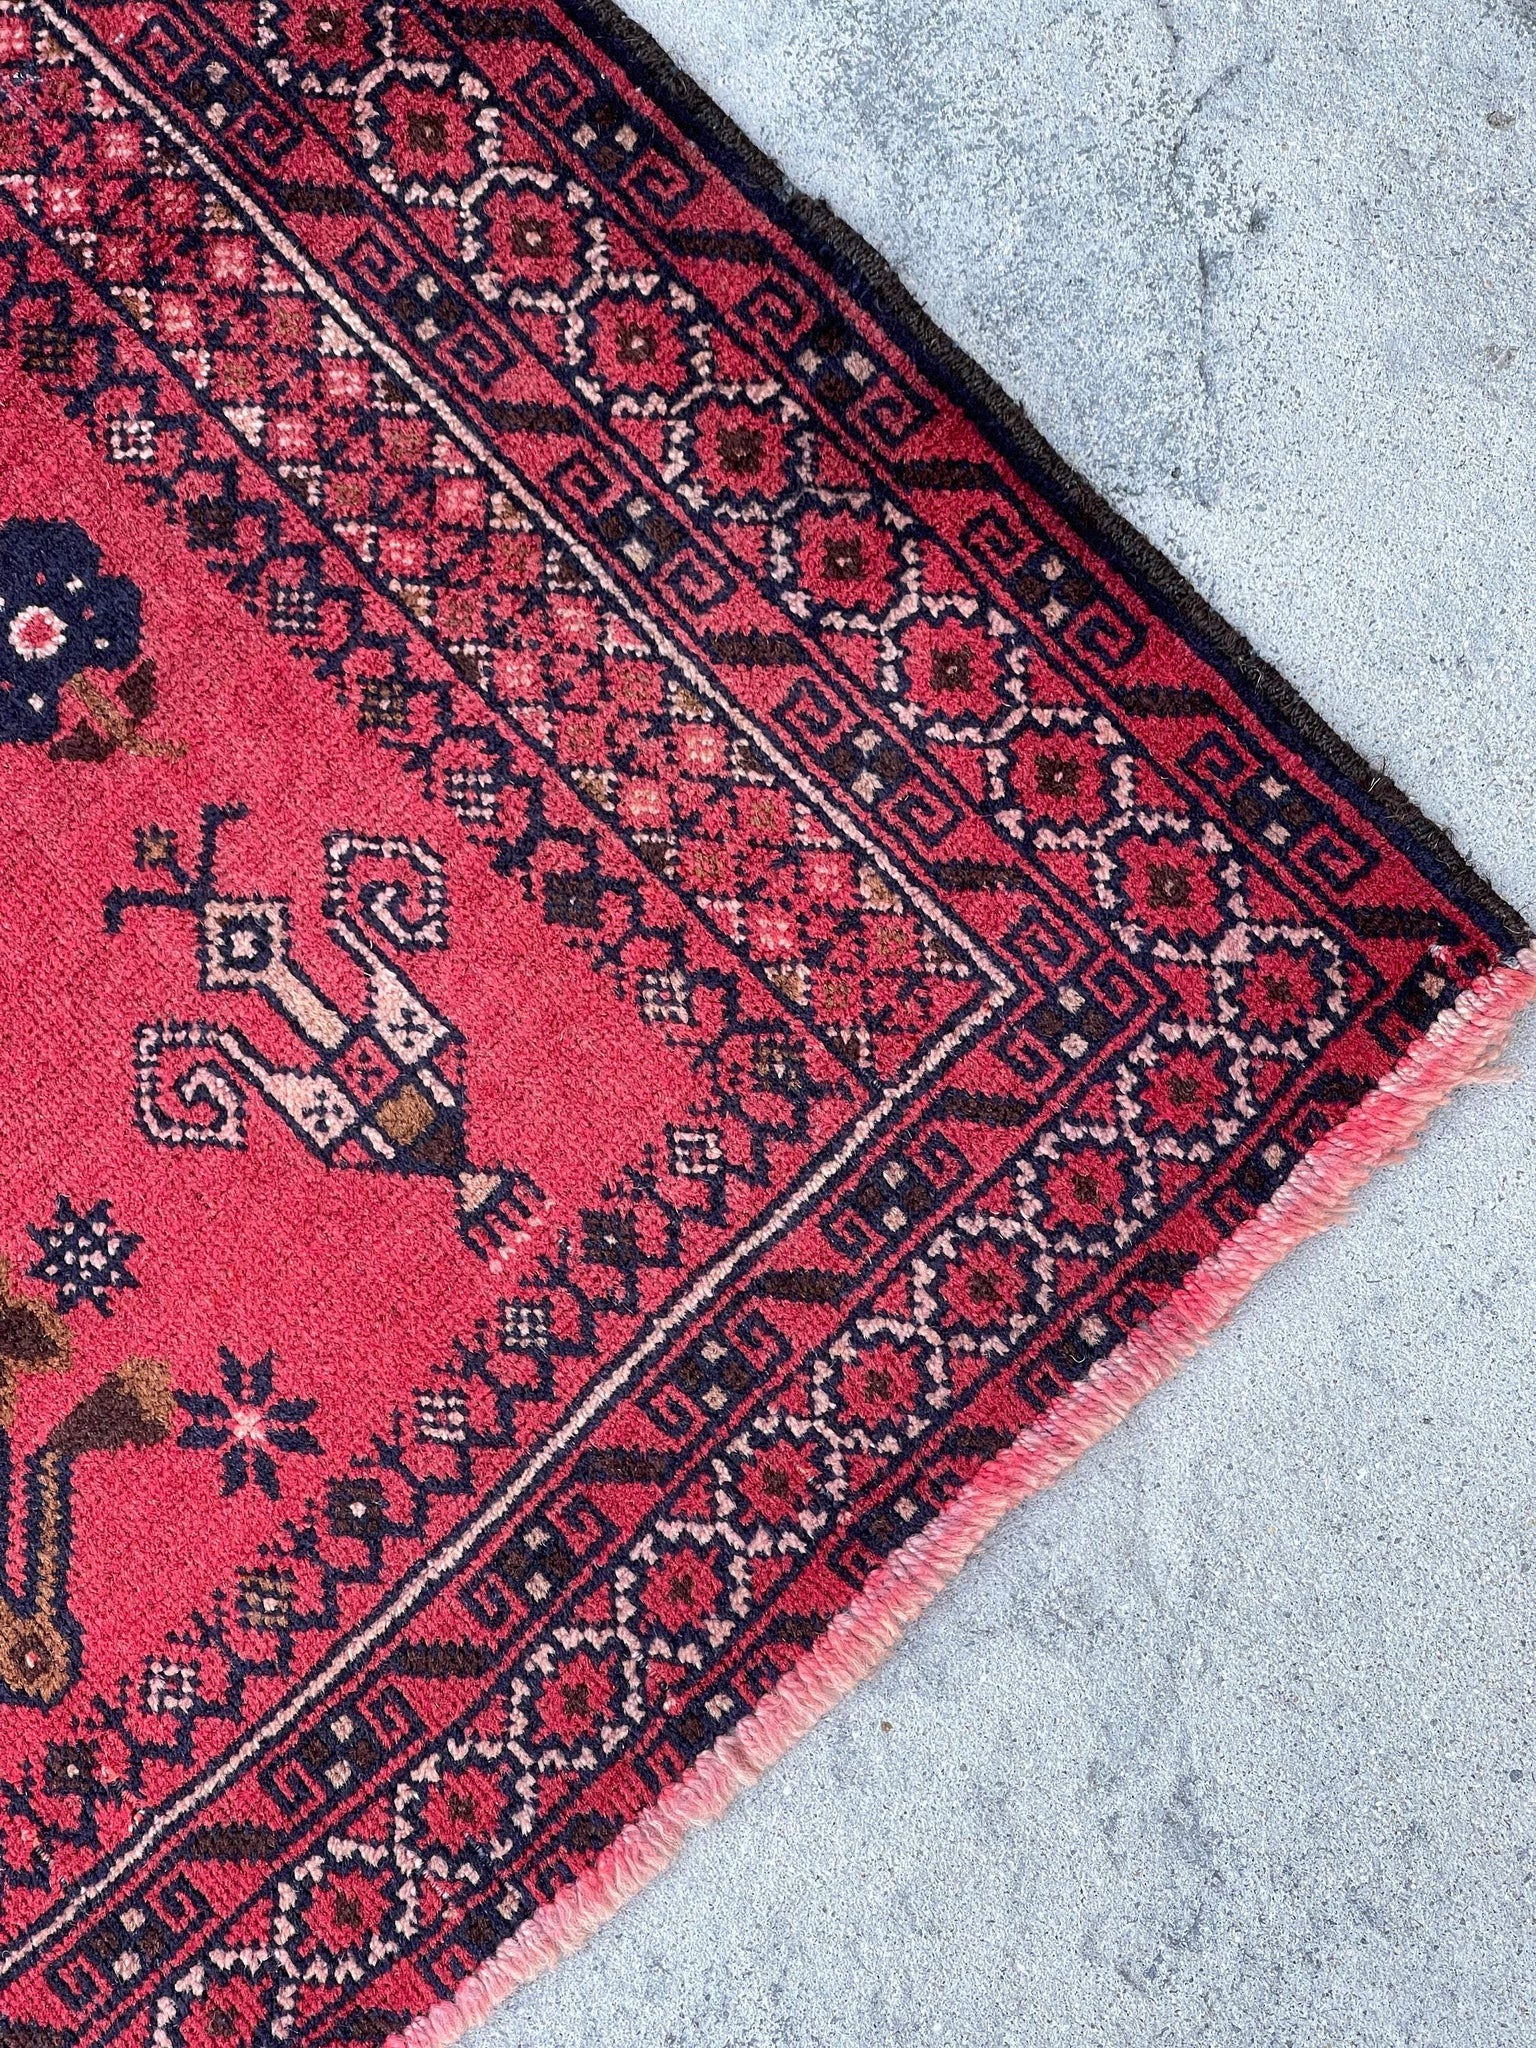 3x5 (90x150) Handmade Vintage Afghan Rug | Red Pink Salmon Brown Indigo | Nomadic Baluch Boho Bohemian Tribal Turkish Moroccan Wool